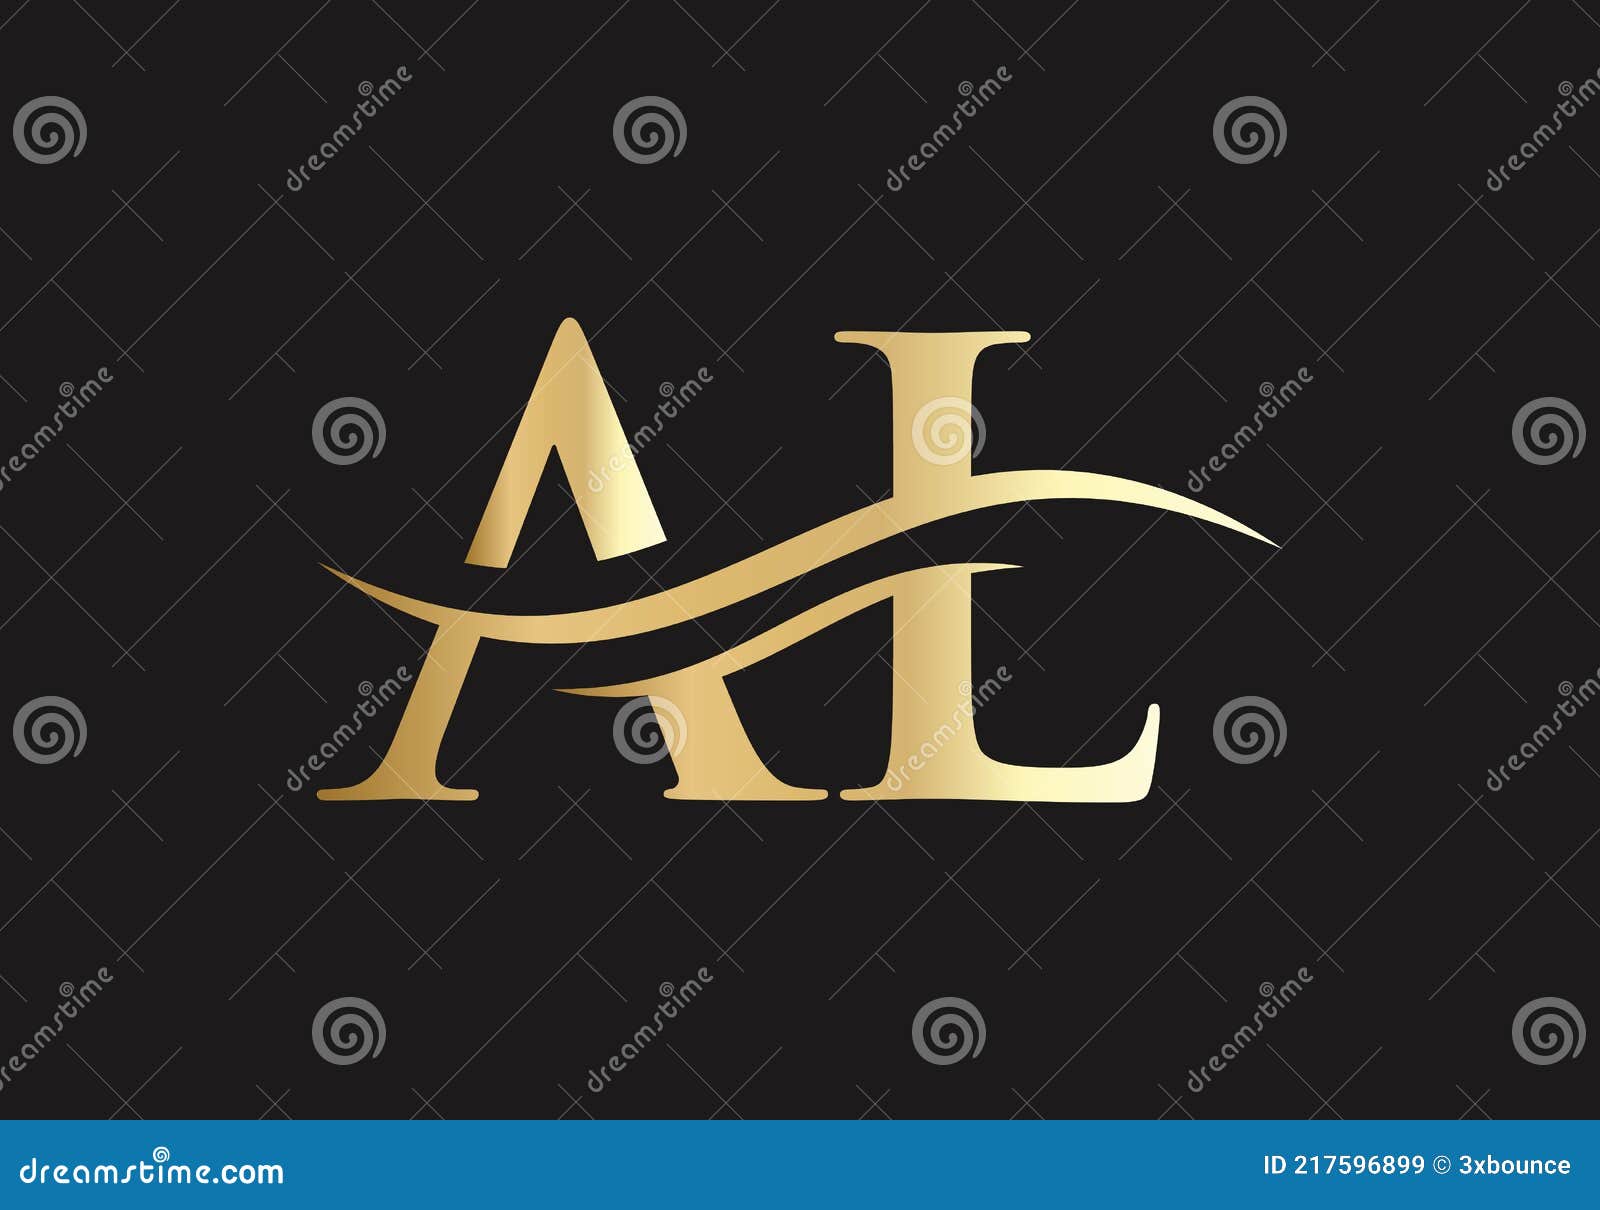 letter logo monogram